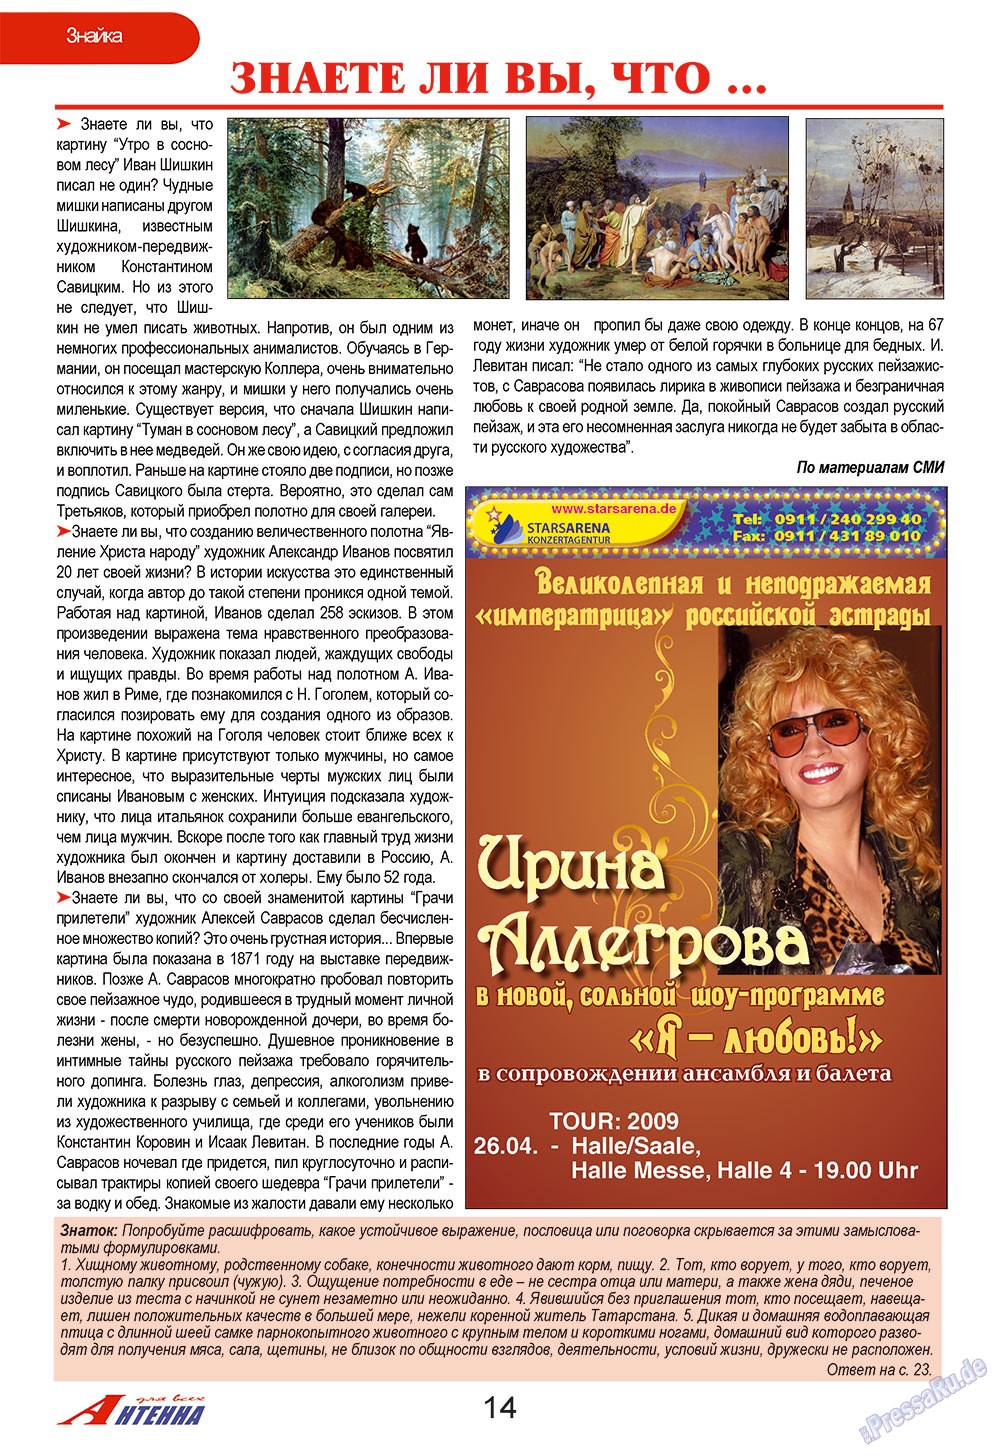 Антенна, журнал. 2009 №3 стр.14